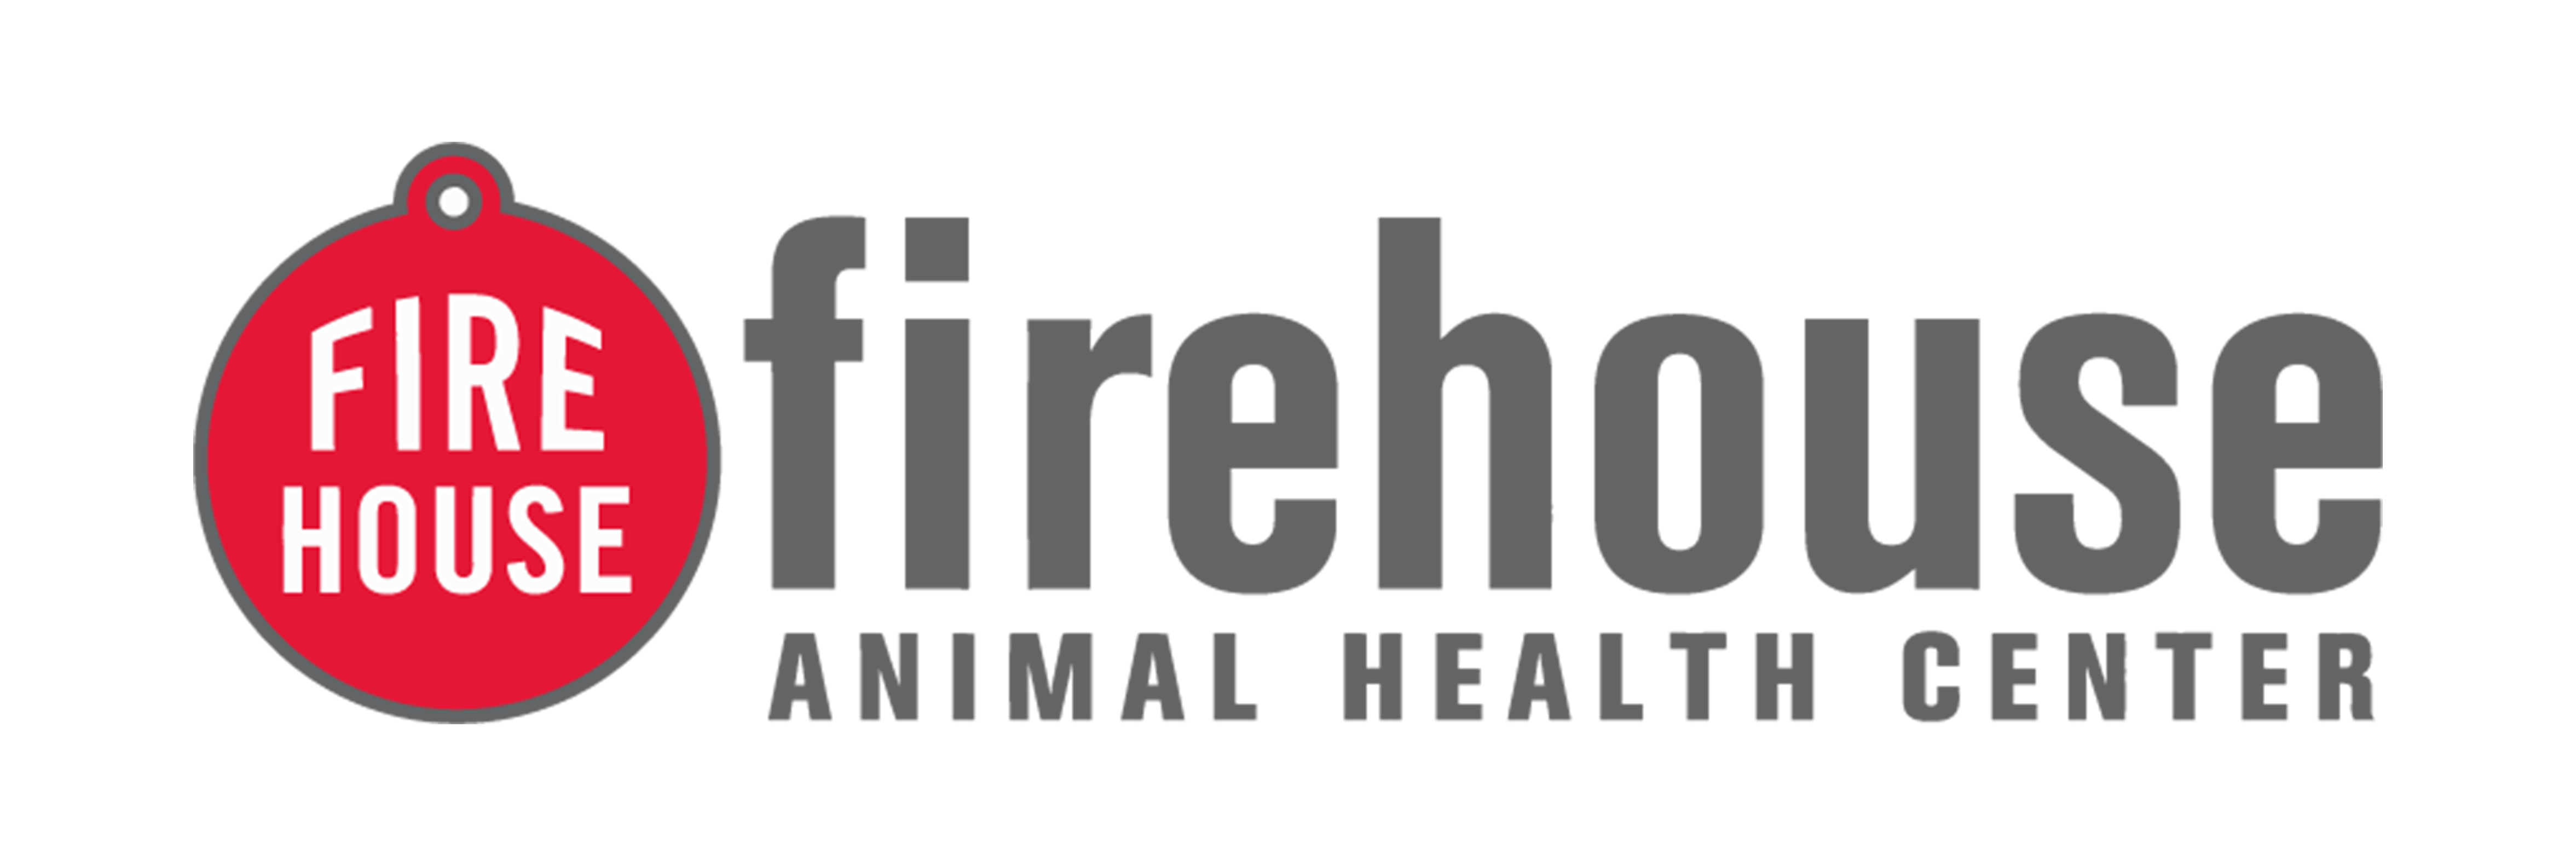 Firehouse Animal Health Kyle